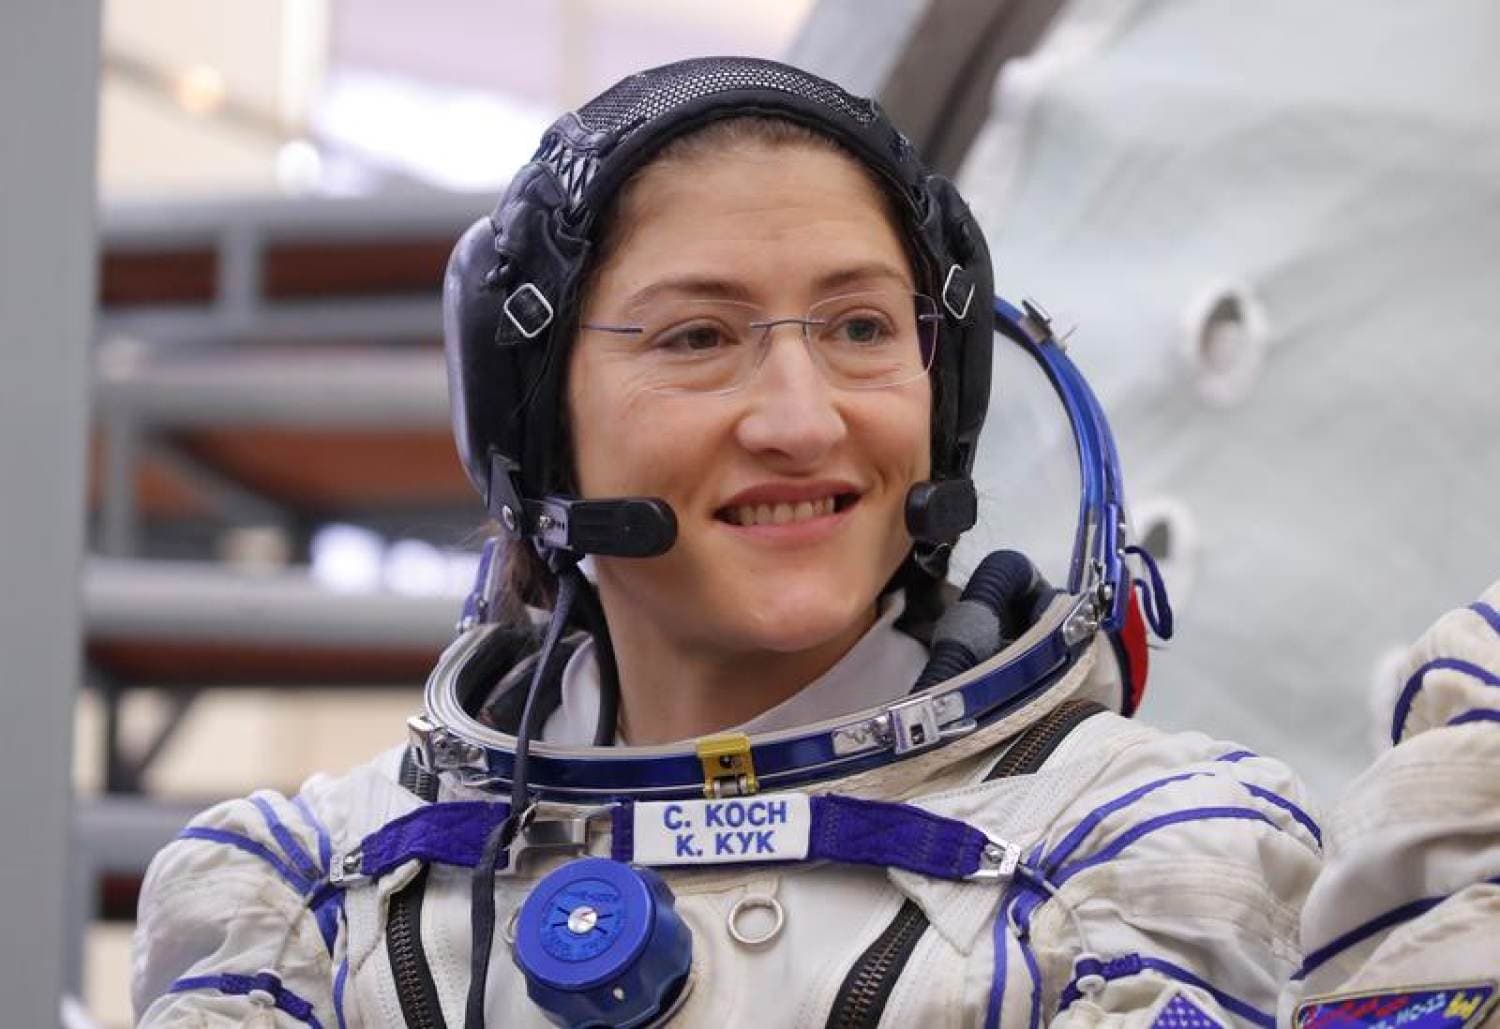 Rekordot döntött Christina Koch, ennyi ideig még sosem volt nő az űrben